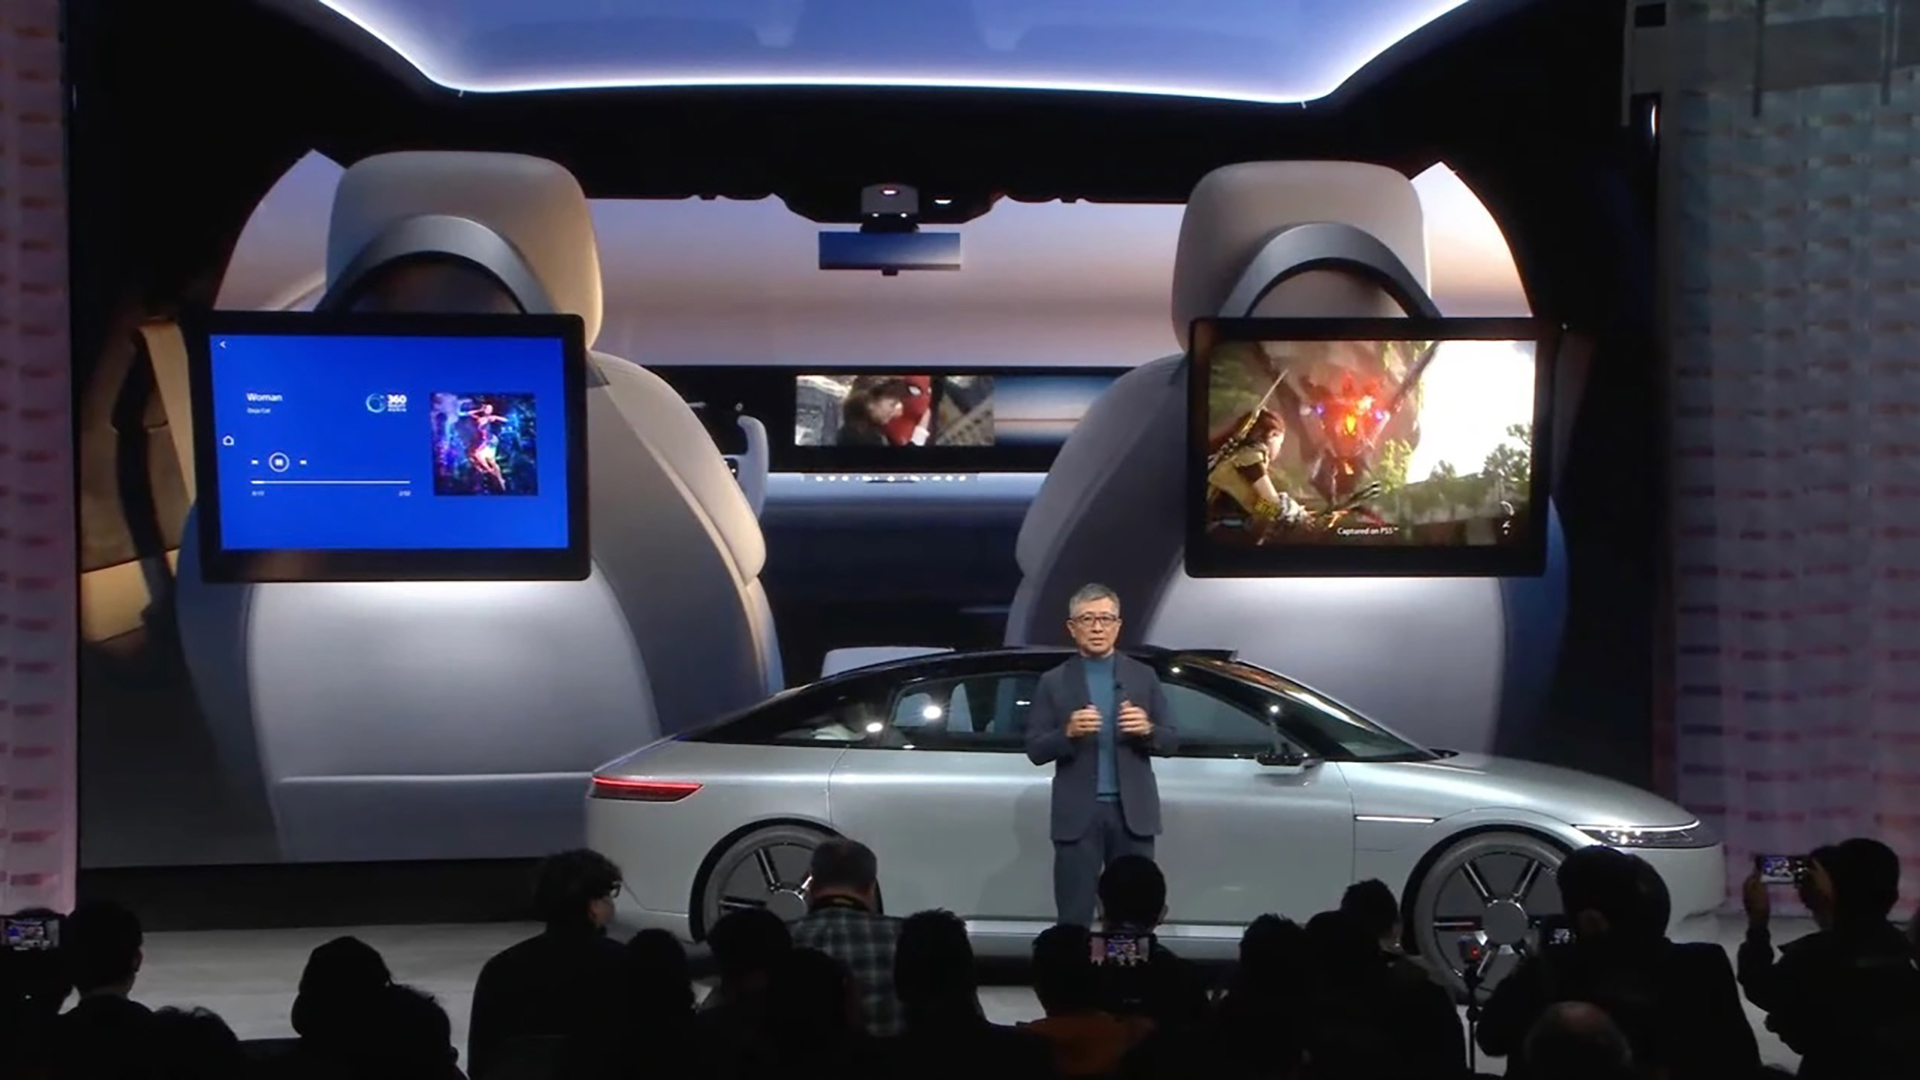 L'auto avrà la tecnologia Sony e l'esperienza Honda e le prenotazioni inizieranno nel 2025. Sarà consegnata nel 2026 negli Stati Uniti come primo mercato.